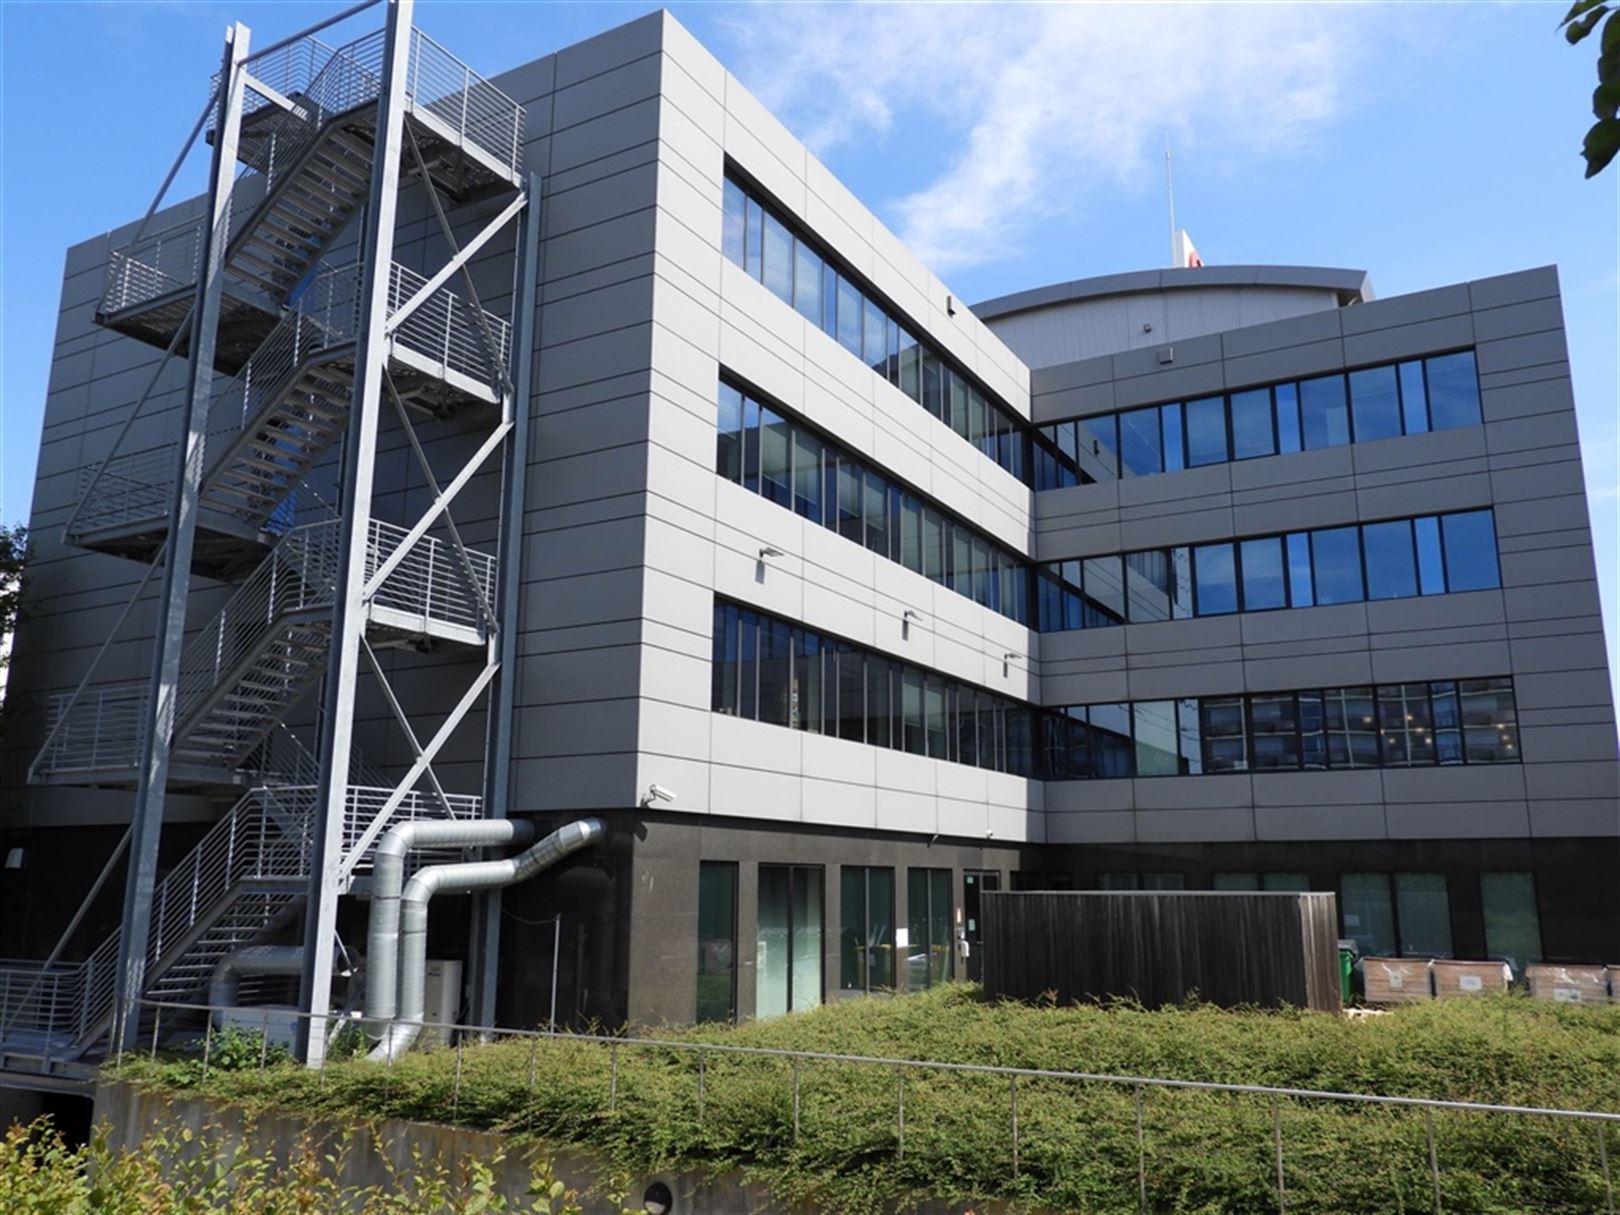 BERKENLAAN 3: kantoorgebouw strategisch in Diegem gelegen met beschikbare oppervlaktes vanaf ong. 600m² tot ong. 1.300m² foto 2